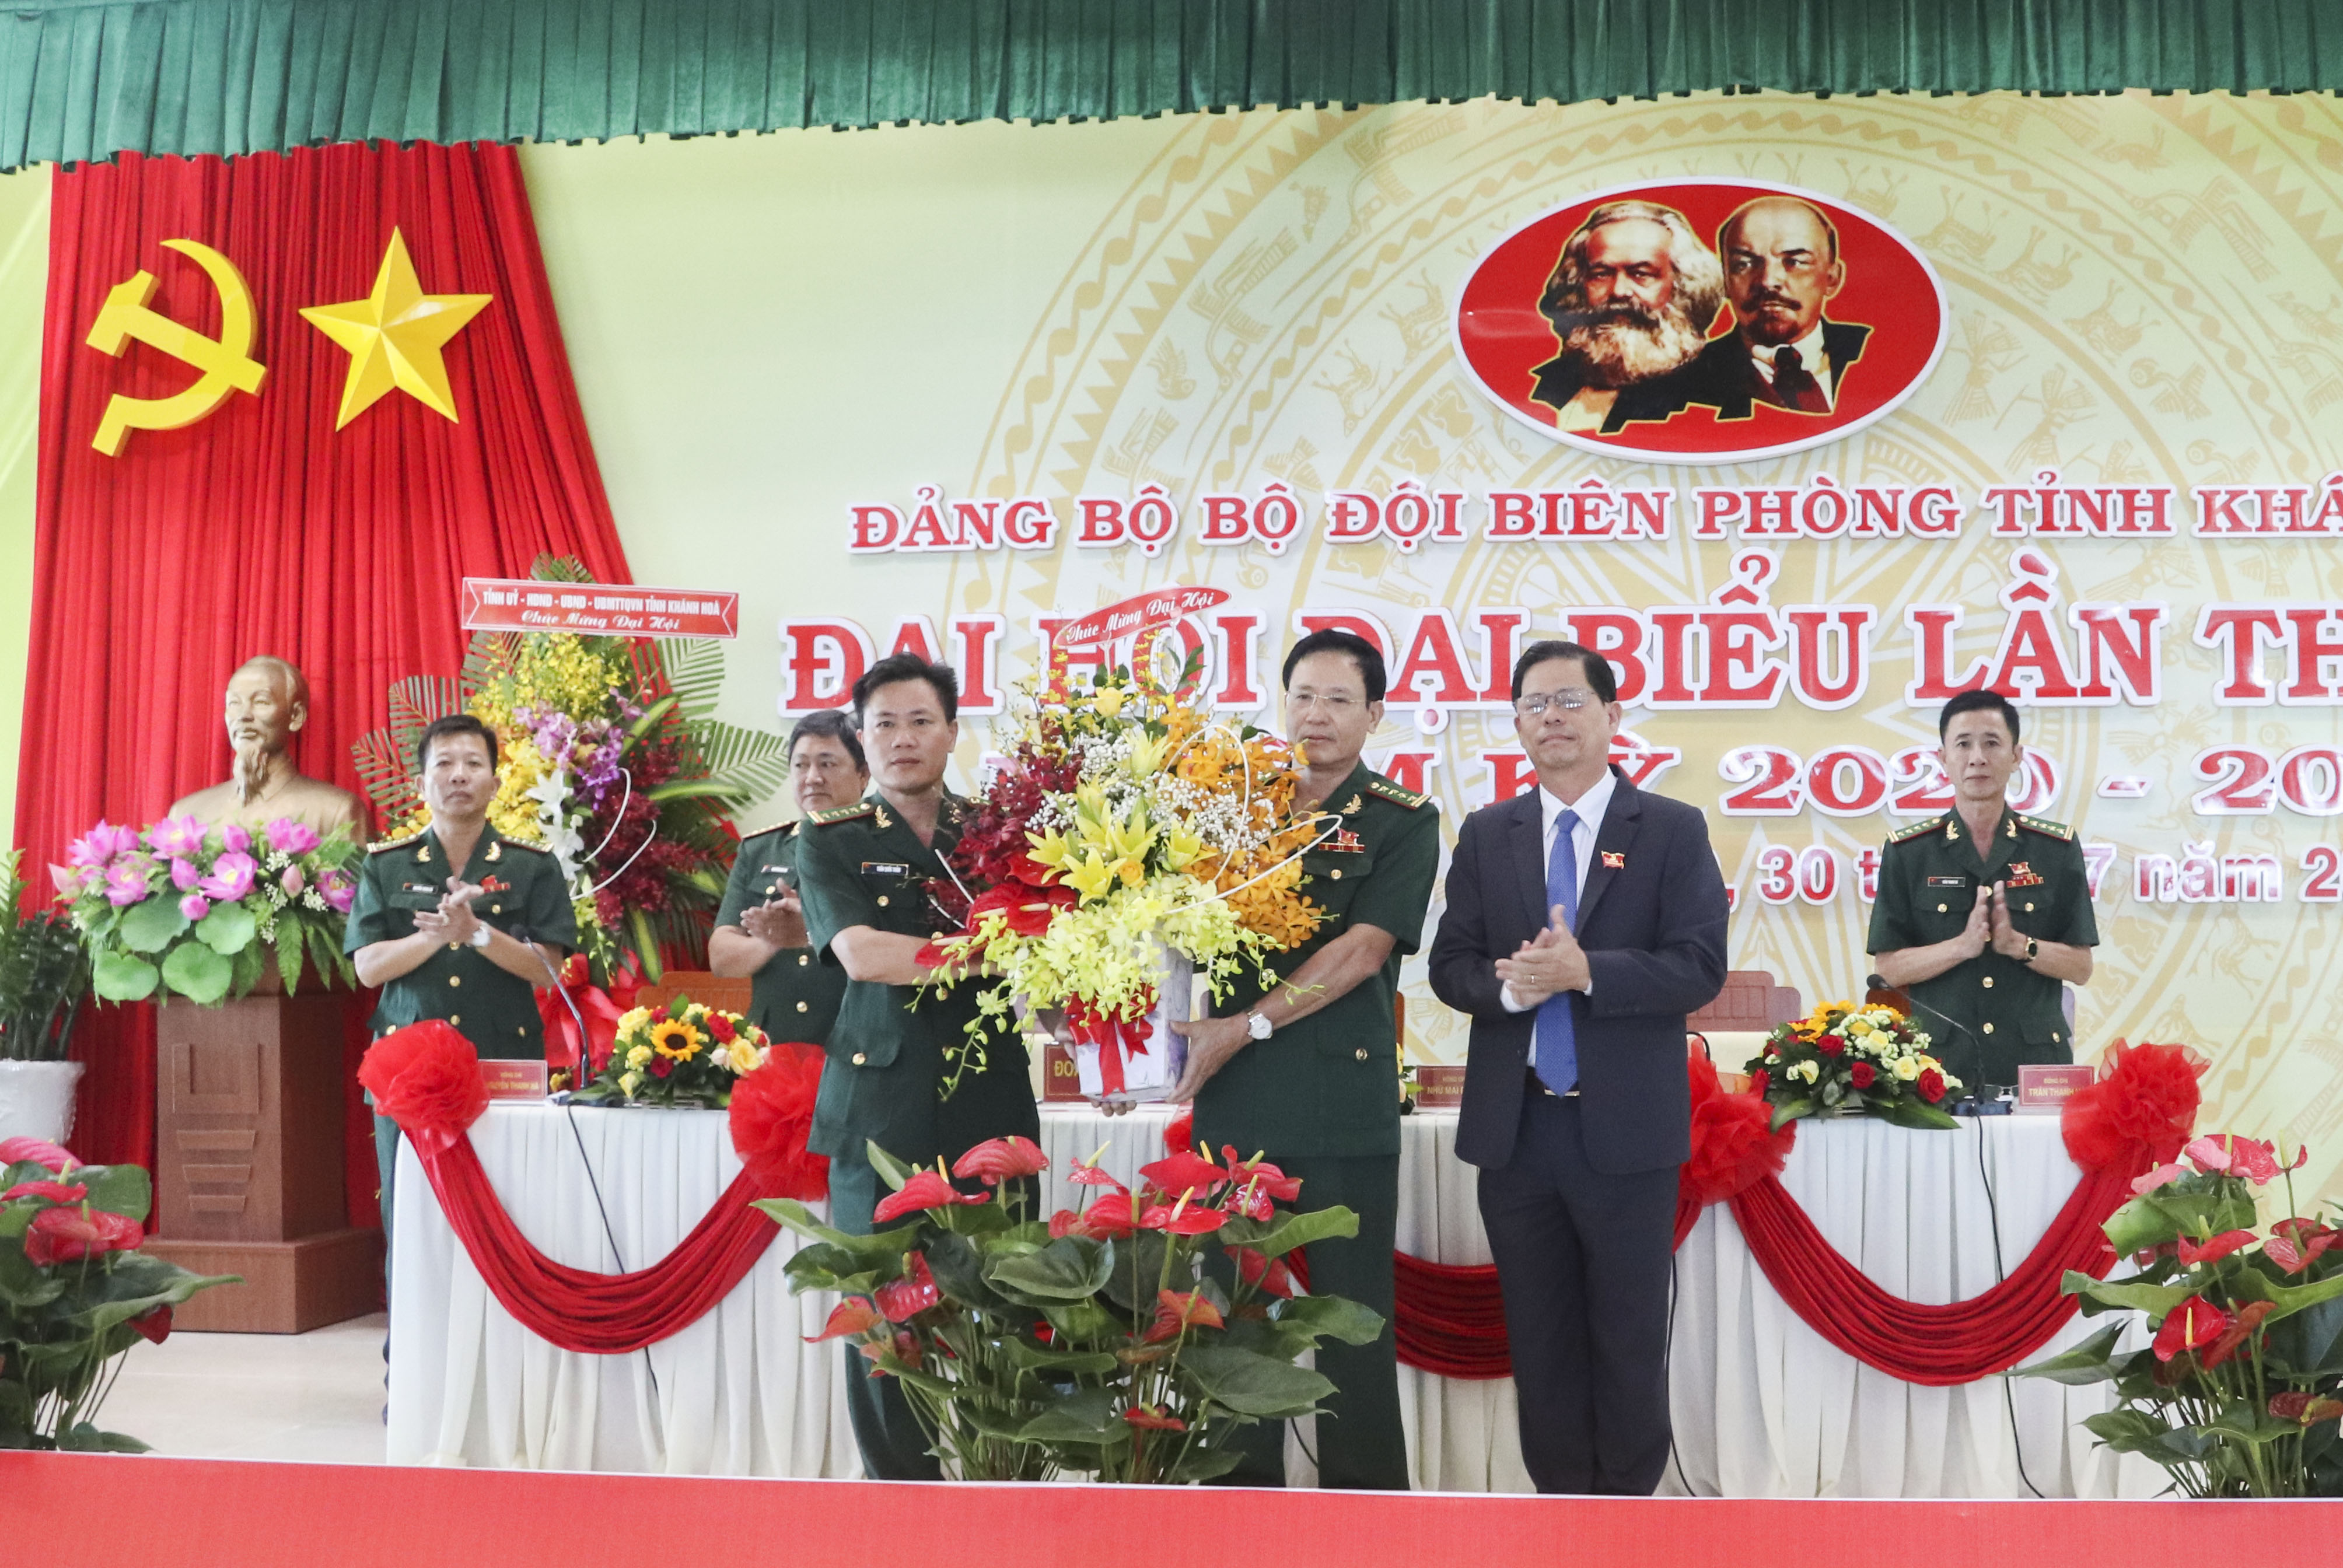 Đại hội Đảng bộ Bộ đội Biên phòng tỉnh Khánh Hòa lần thứ VIII